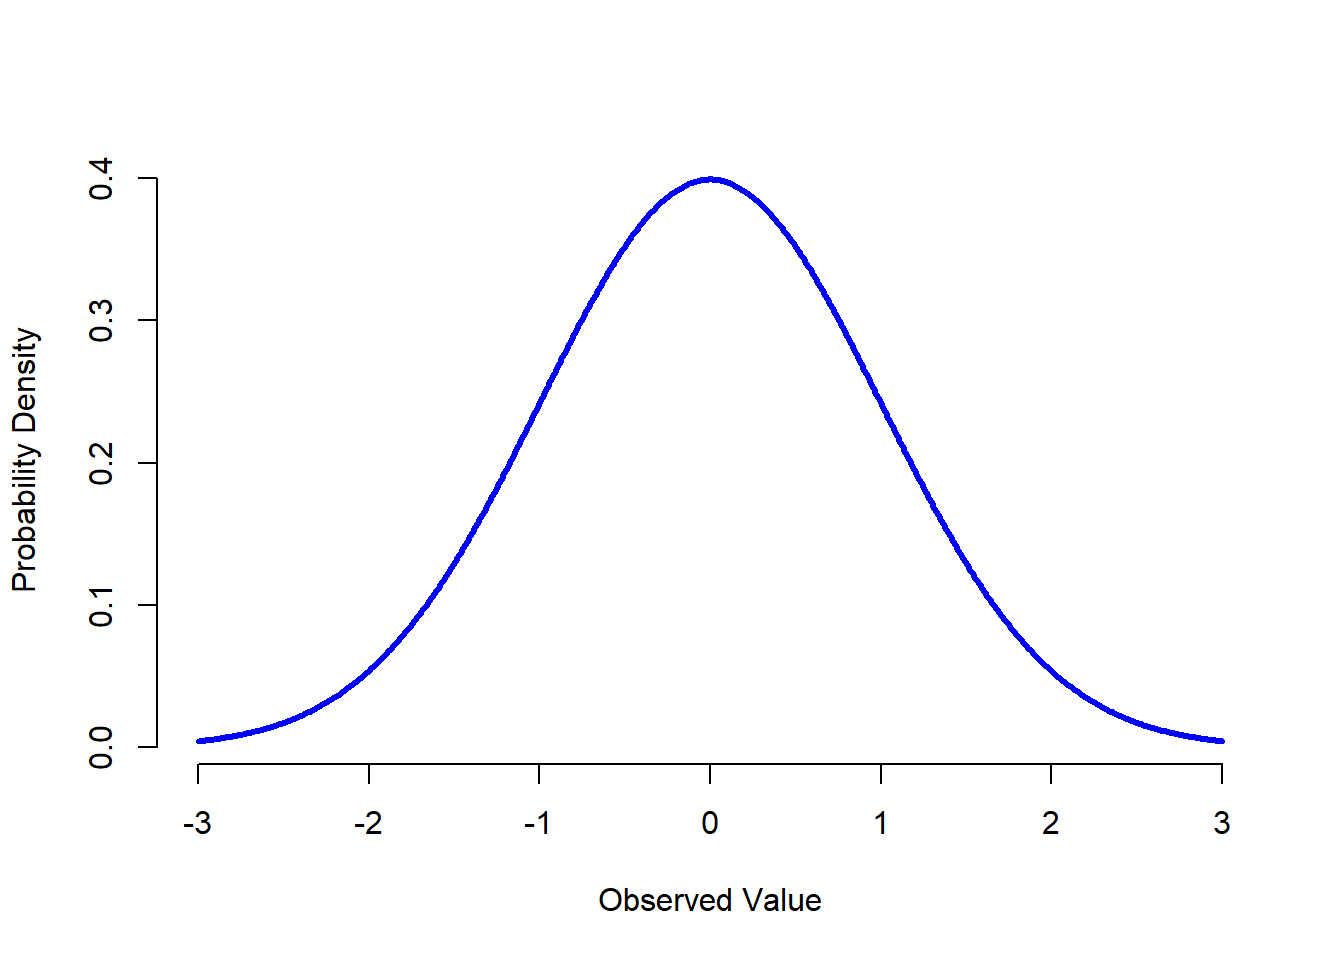  Distribución normal con media $mu = 0$ y desviación estándar $sigma = 1$. El eje $x$ corresponde con el valor de alguna variable, y el eje $y$ nos dice qué tan probable es que observemos ese valor. Sin embargo, vemos como el eje $y$ se denomina "Densidad de Probabilidad" y no "Probabilidad". La altura de la curva no representa como tal la probabilidad de observar un valor particular de $x$. Sin embargo, las alturas nos informan sobre qué valores de $x$ son más probables (¡los más altos!).